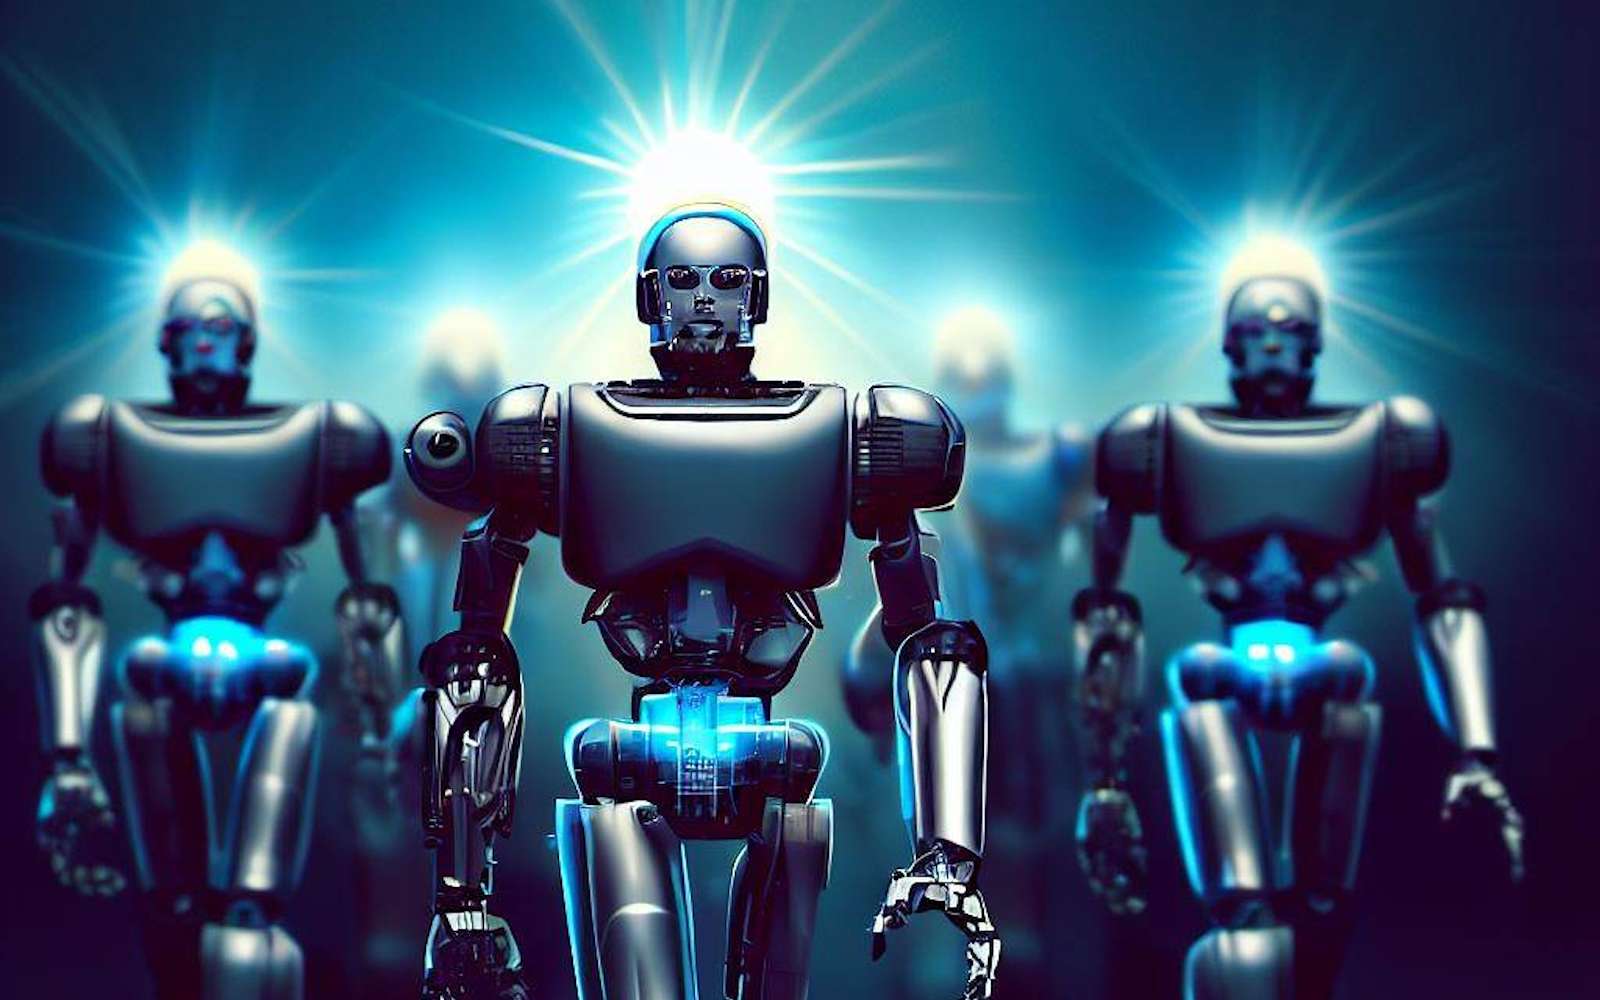 Est-ce que des intelligences artificielles pourraient diriger le monde mieux que des humains ?